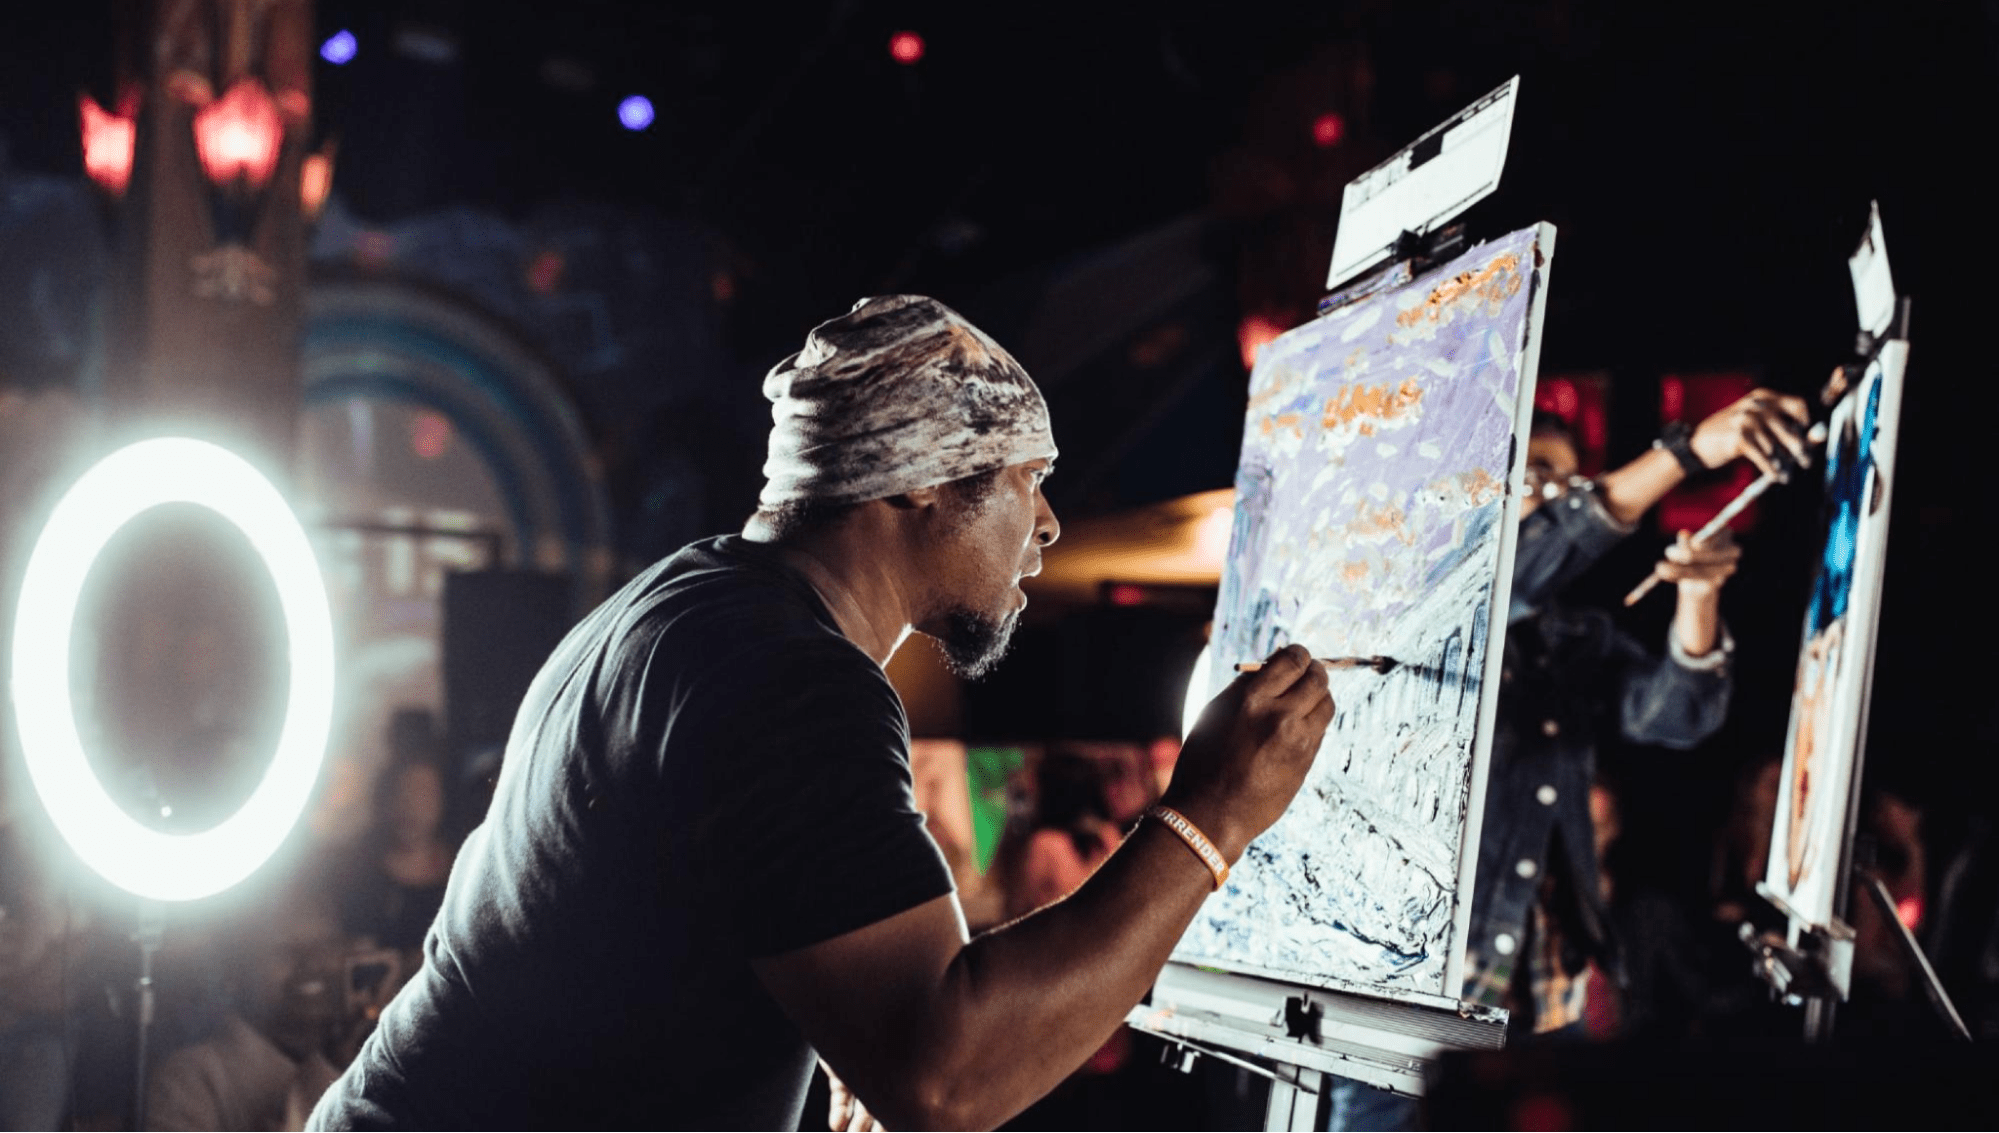 Black artist works on painting on stage